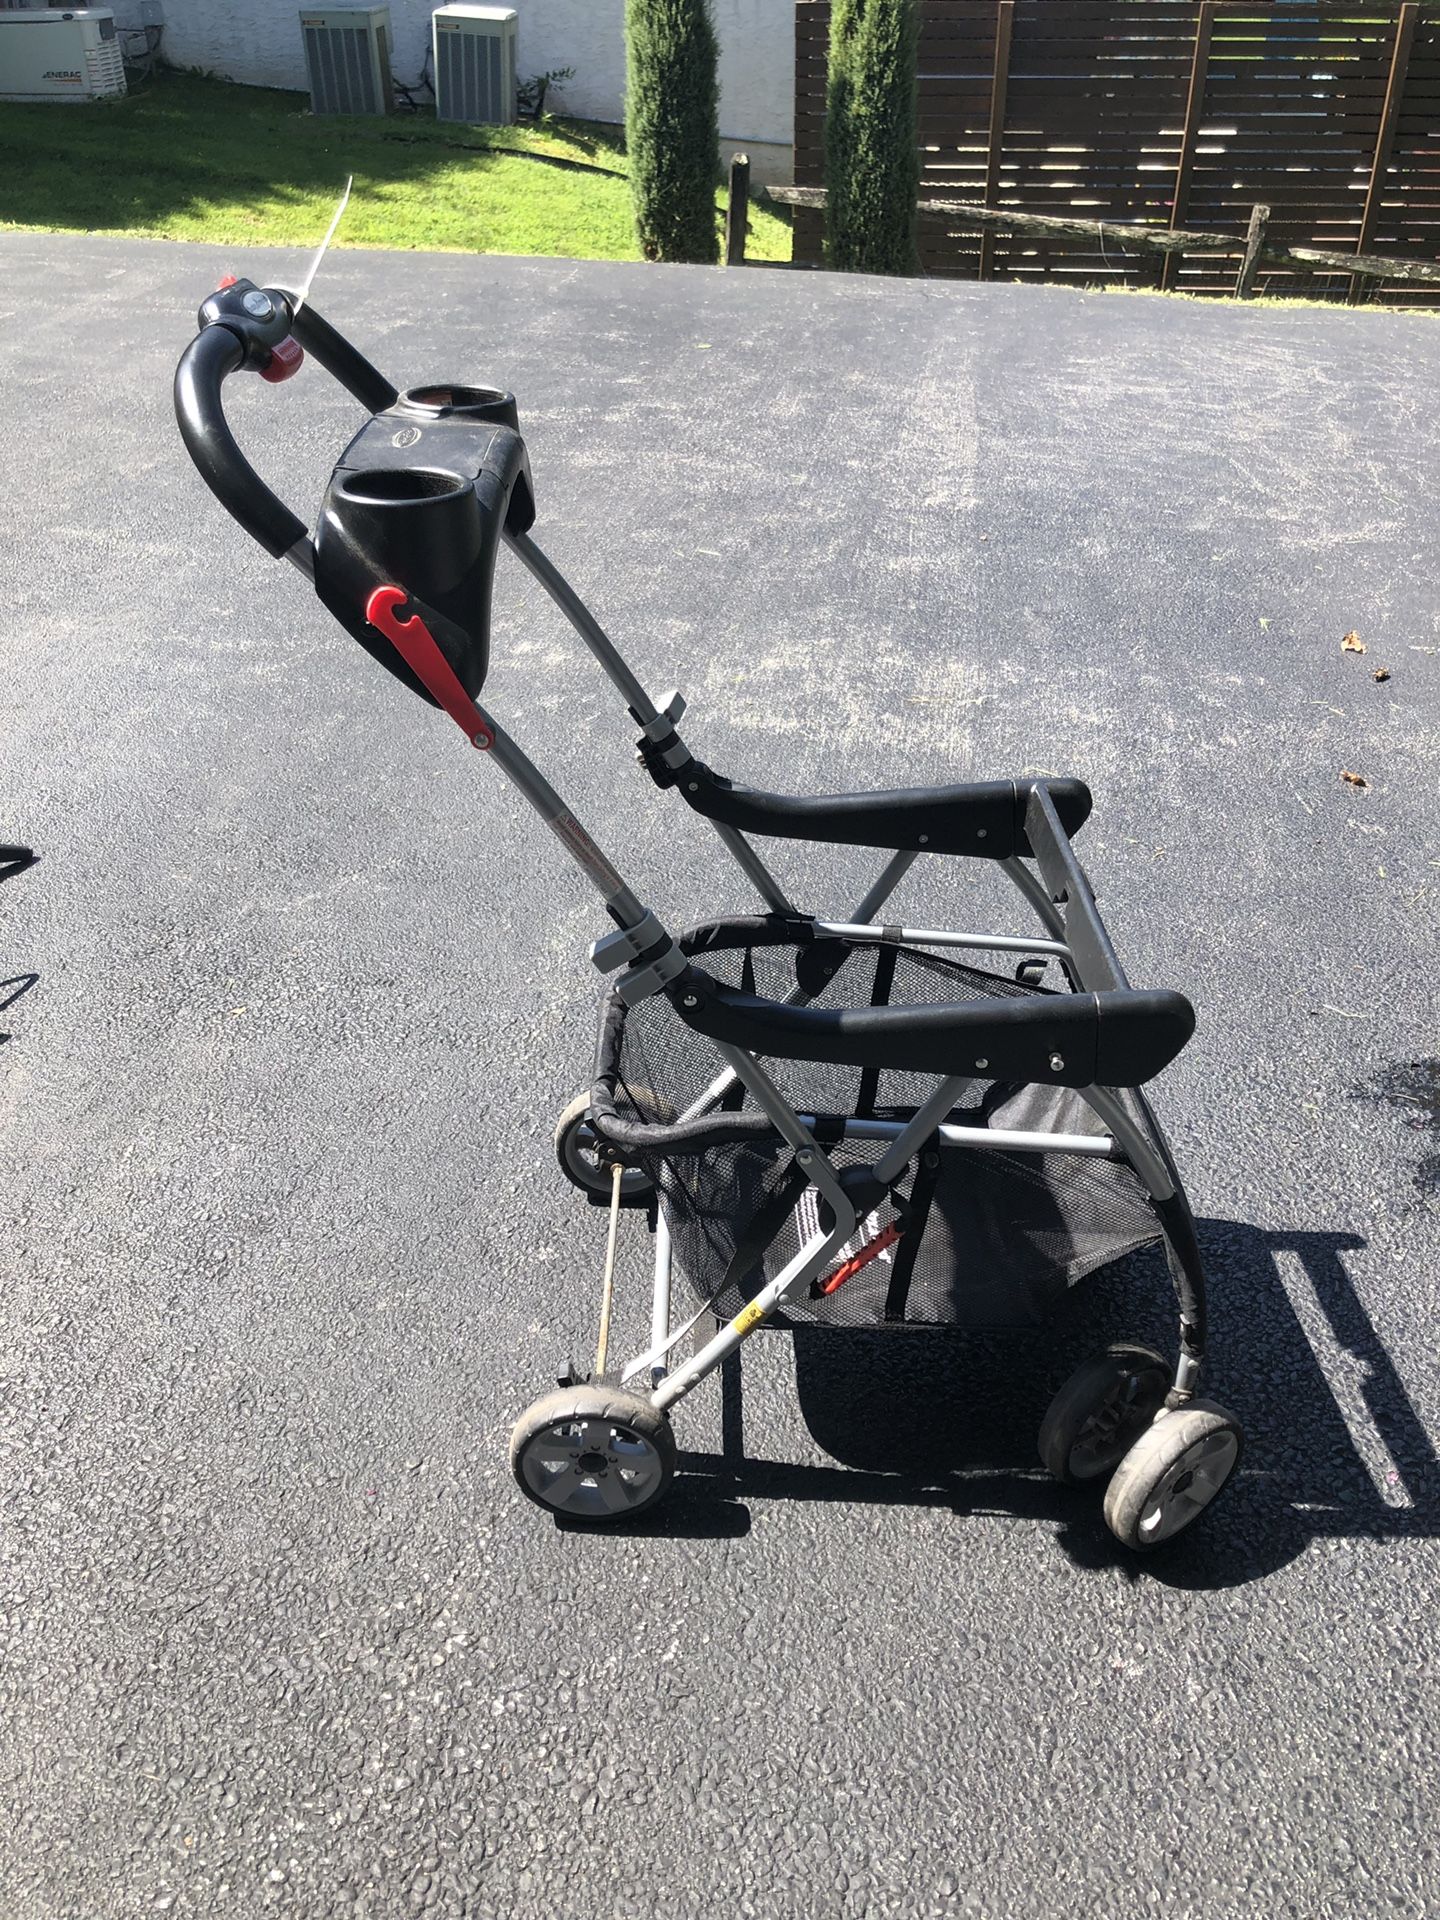 Baby Trend Snap-N-Go Stroller